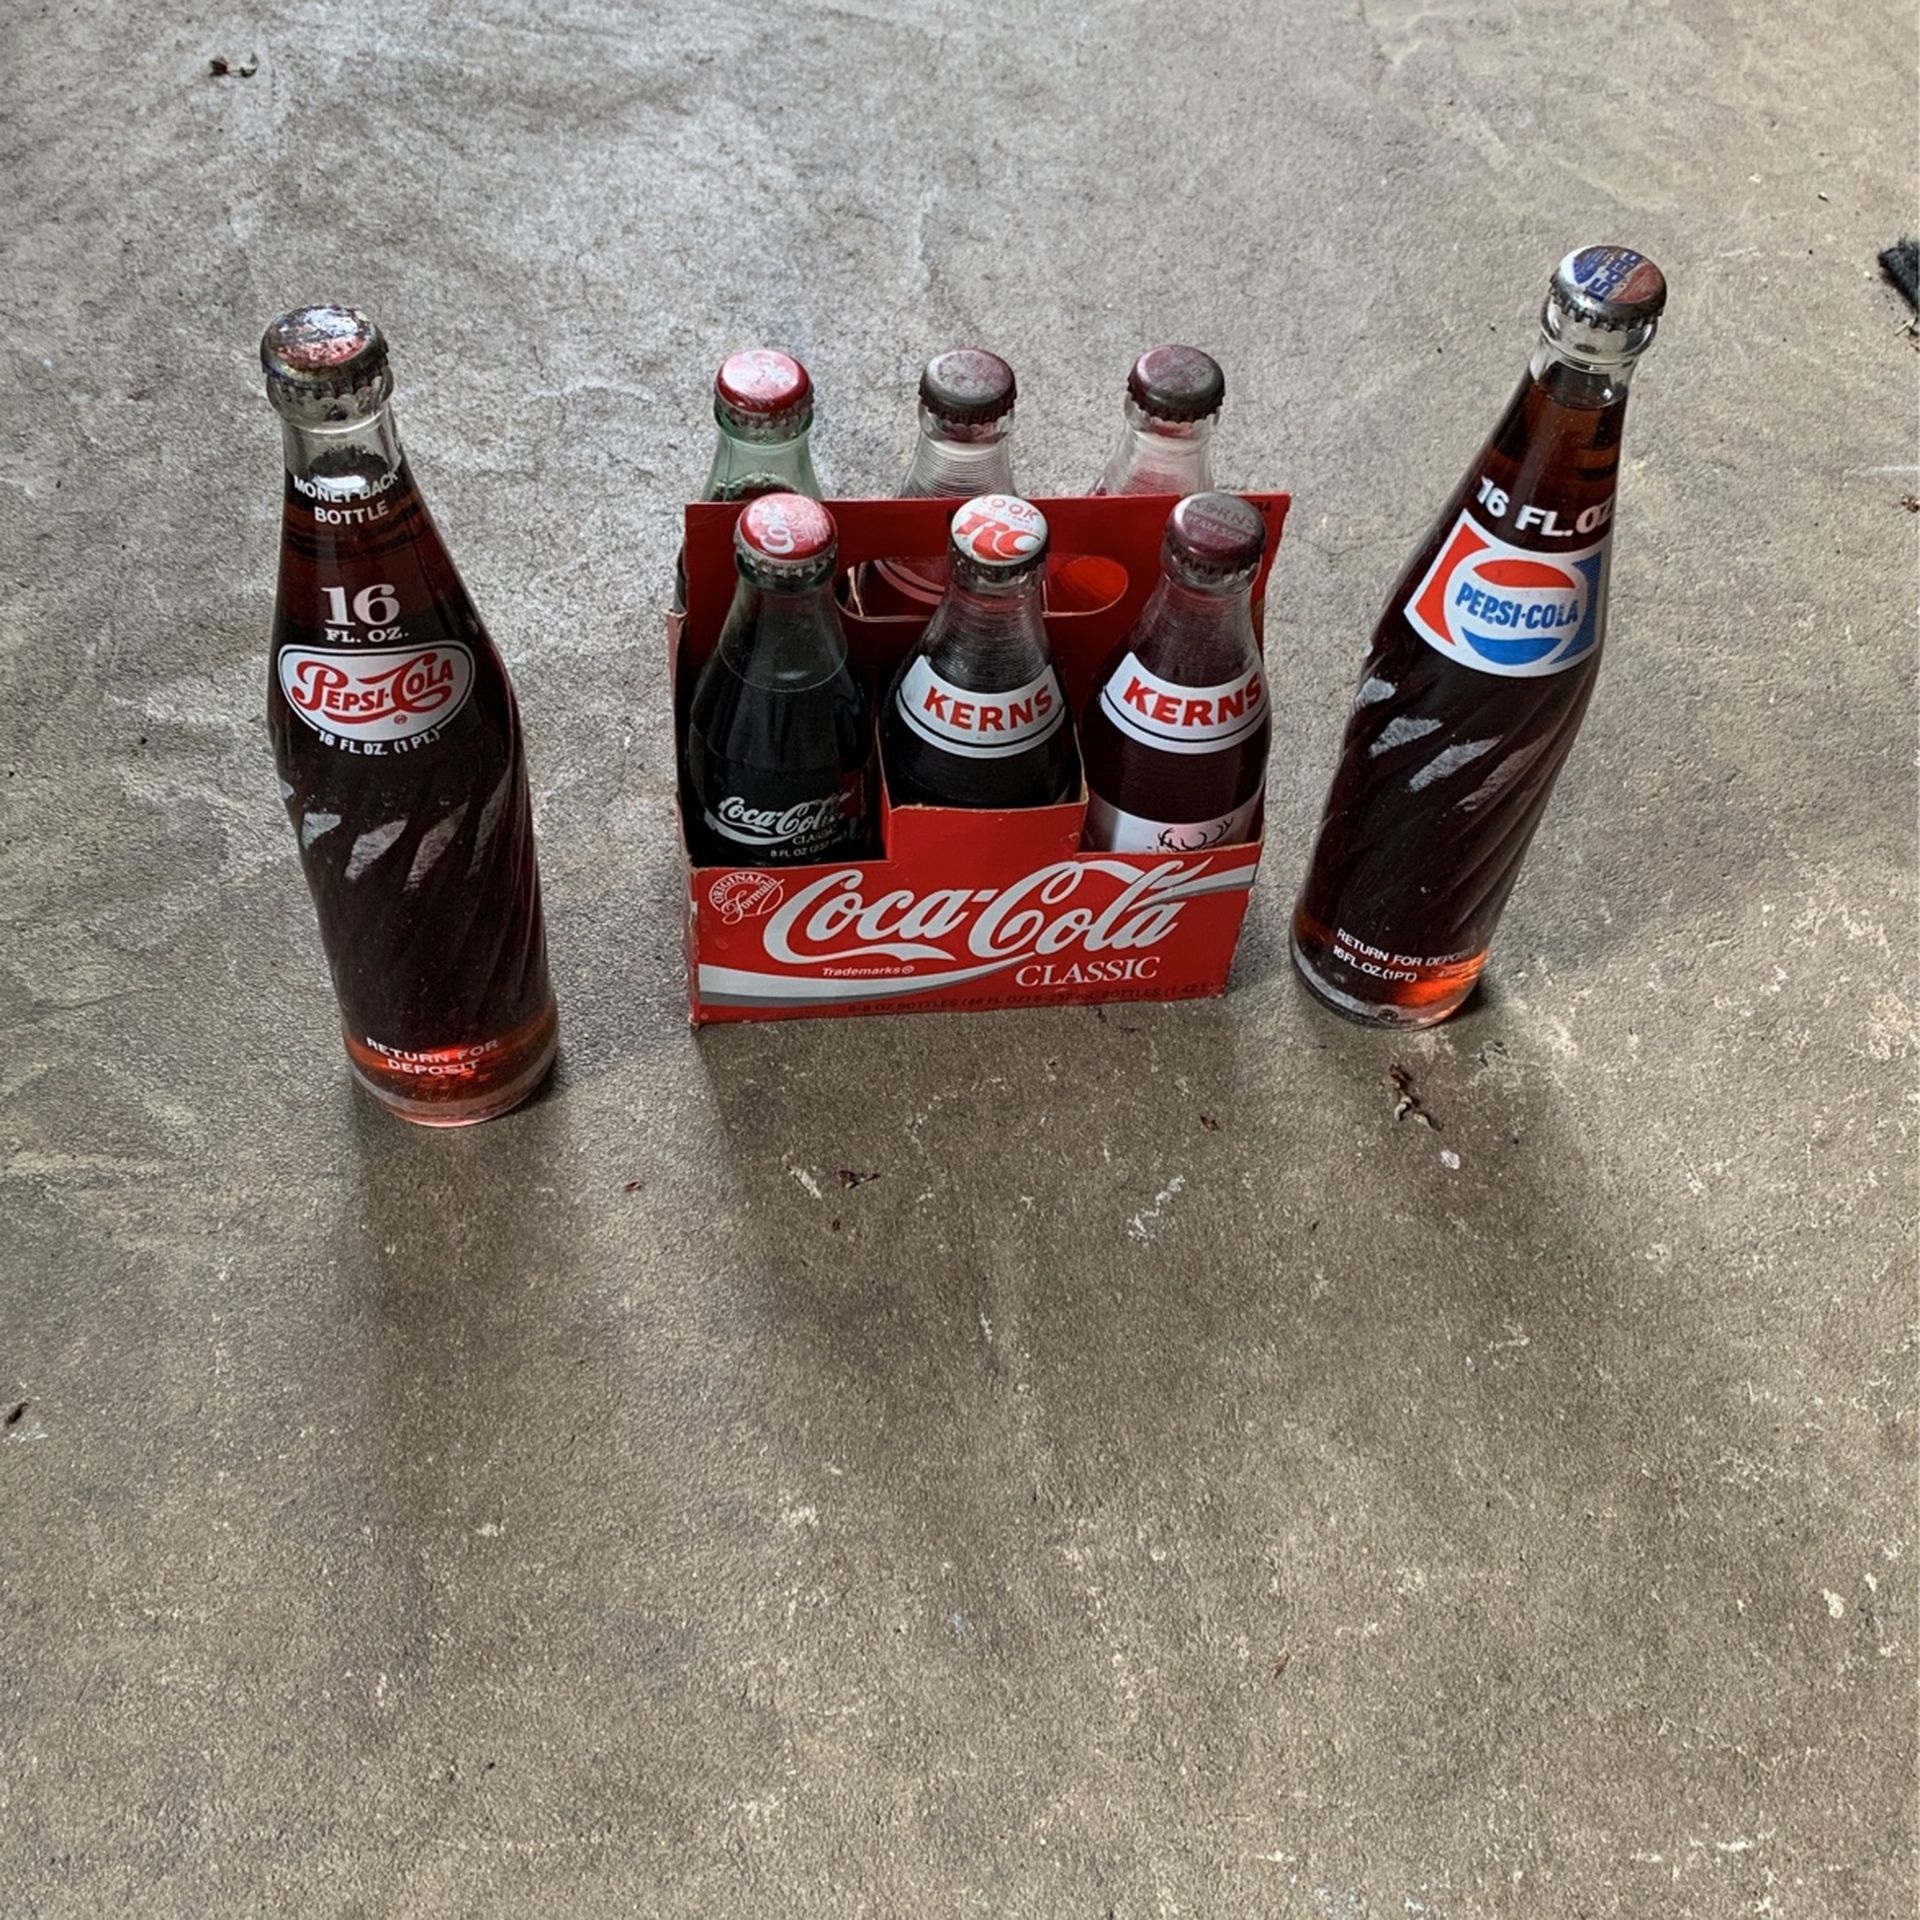 Old Kerns and Coke  Bottles